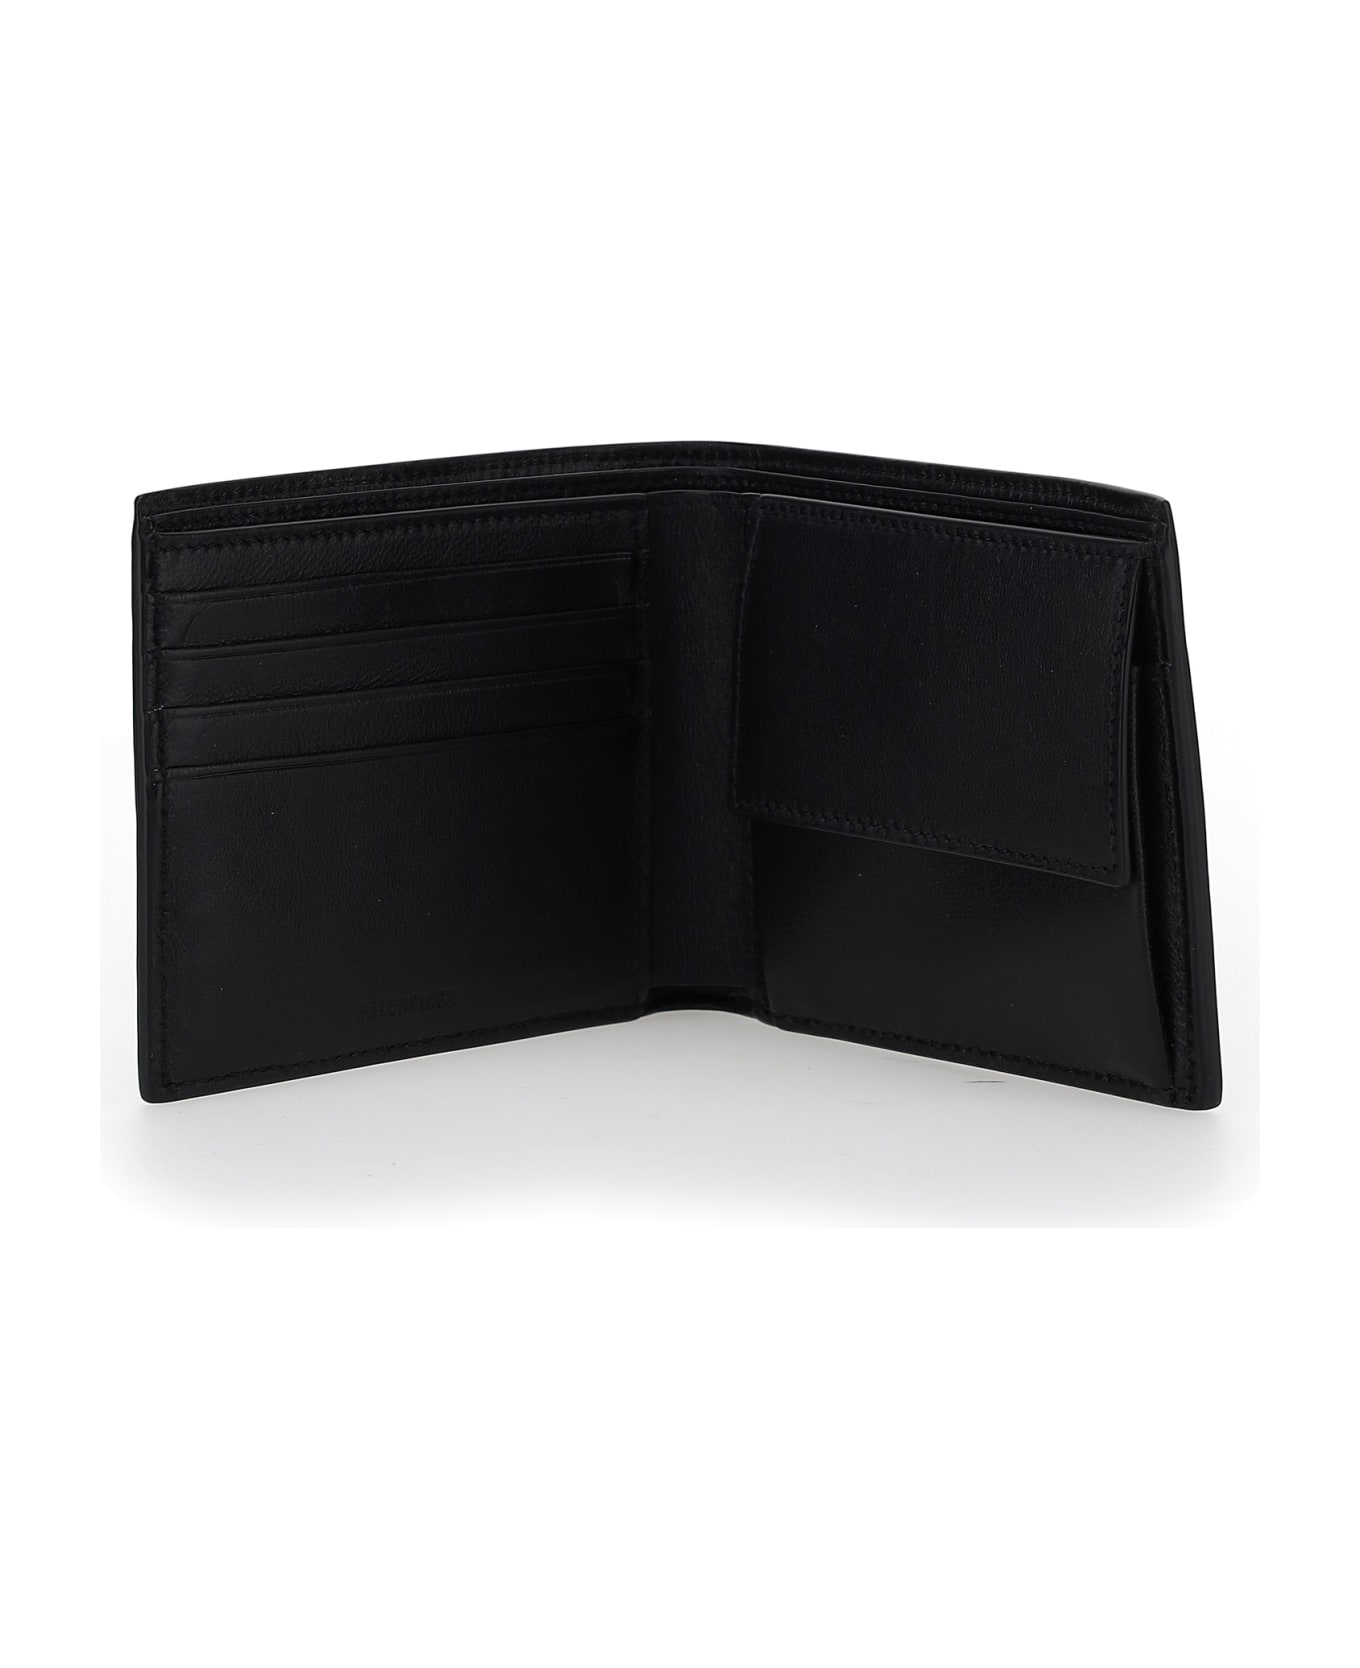 Balenciaga Wallet - Black